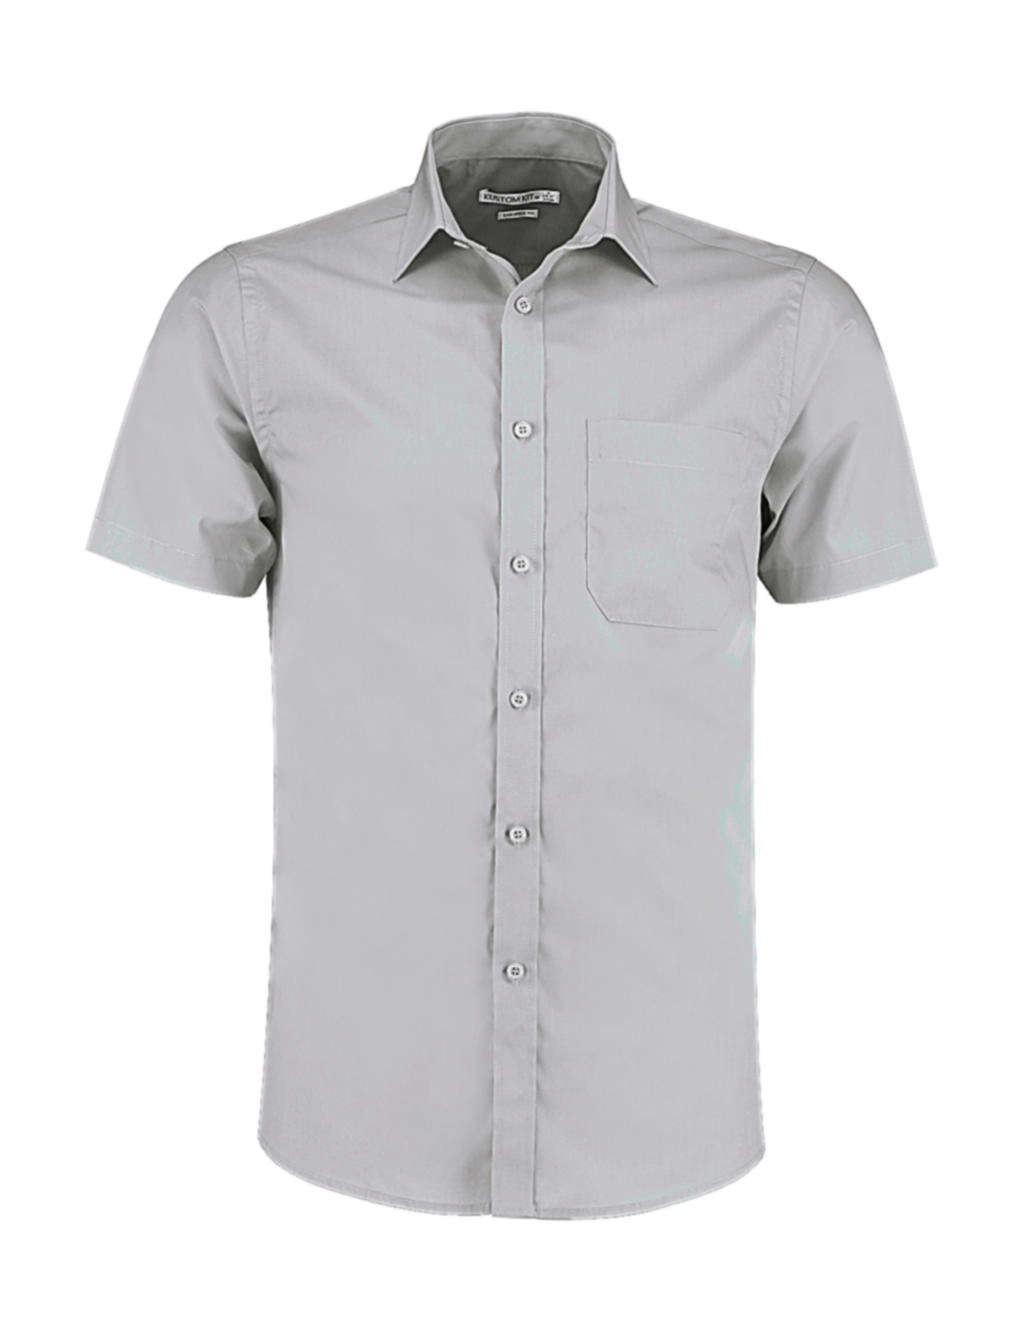 Tailored Fit Poplin Shirt SSL zum Besticken und Bedrucken in der Farbe Light Grey mit Ihren Logo, Schriftzug oder Motiv.